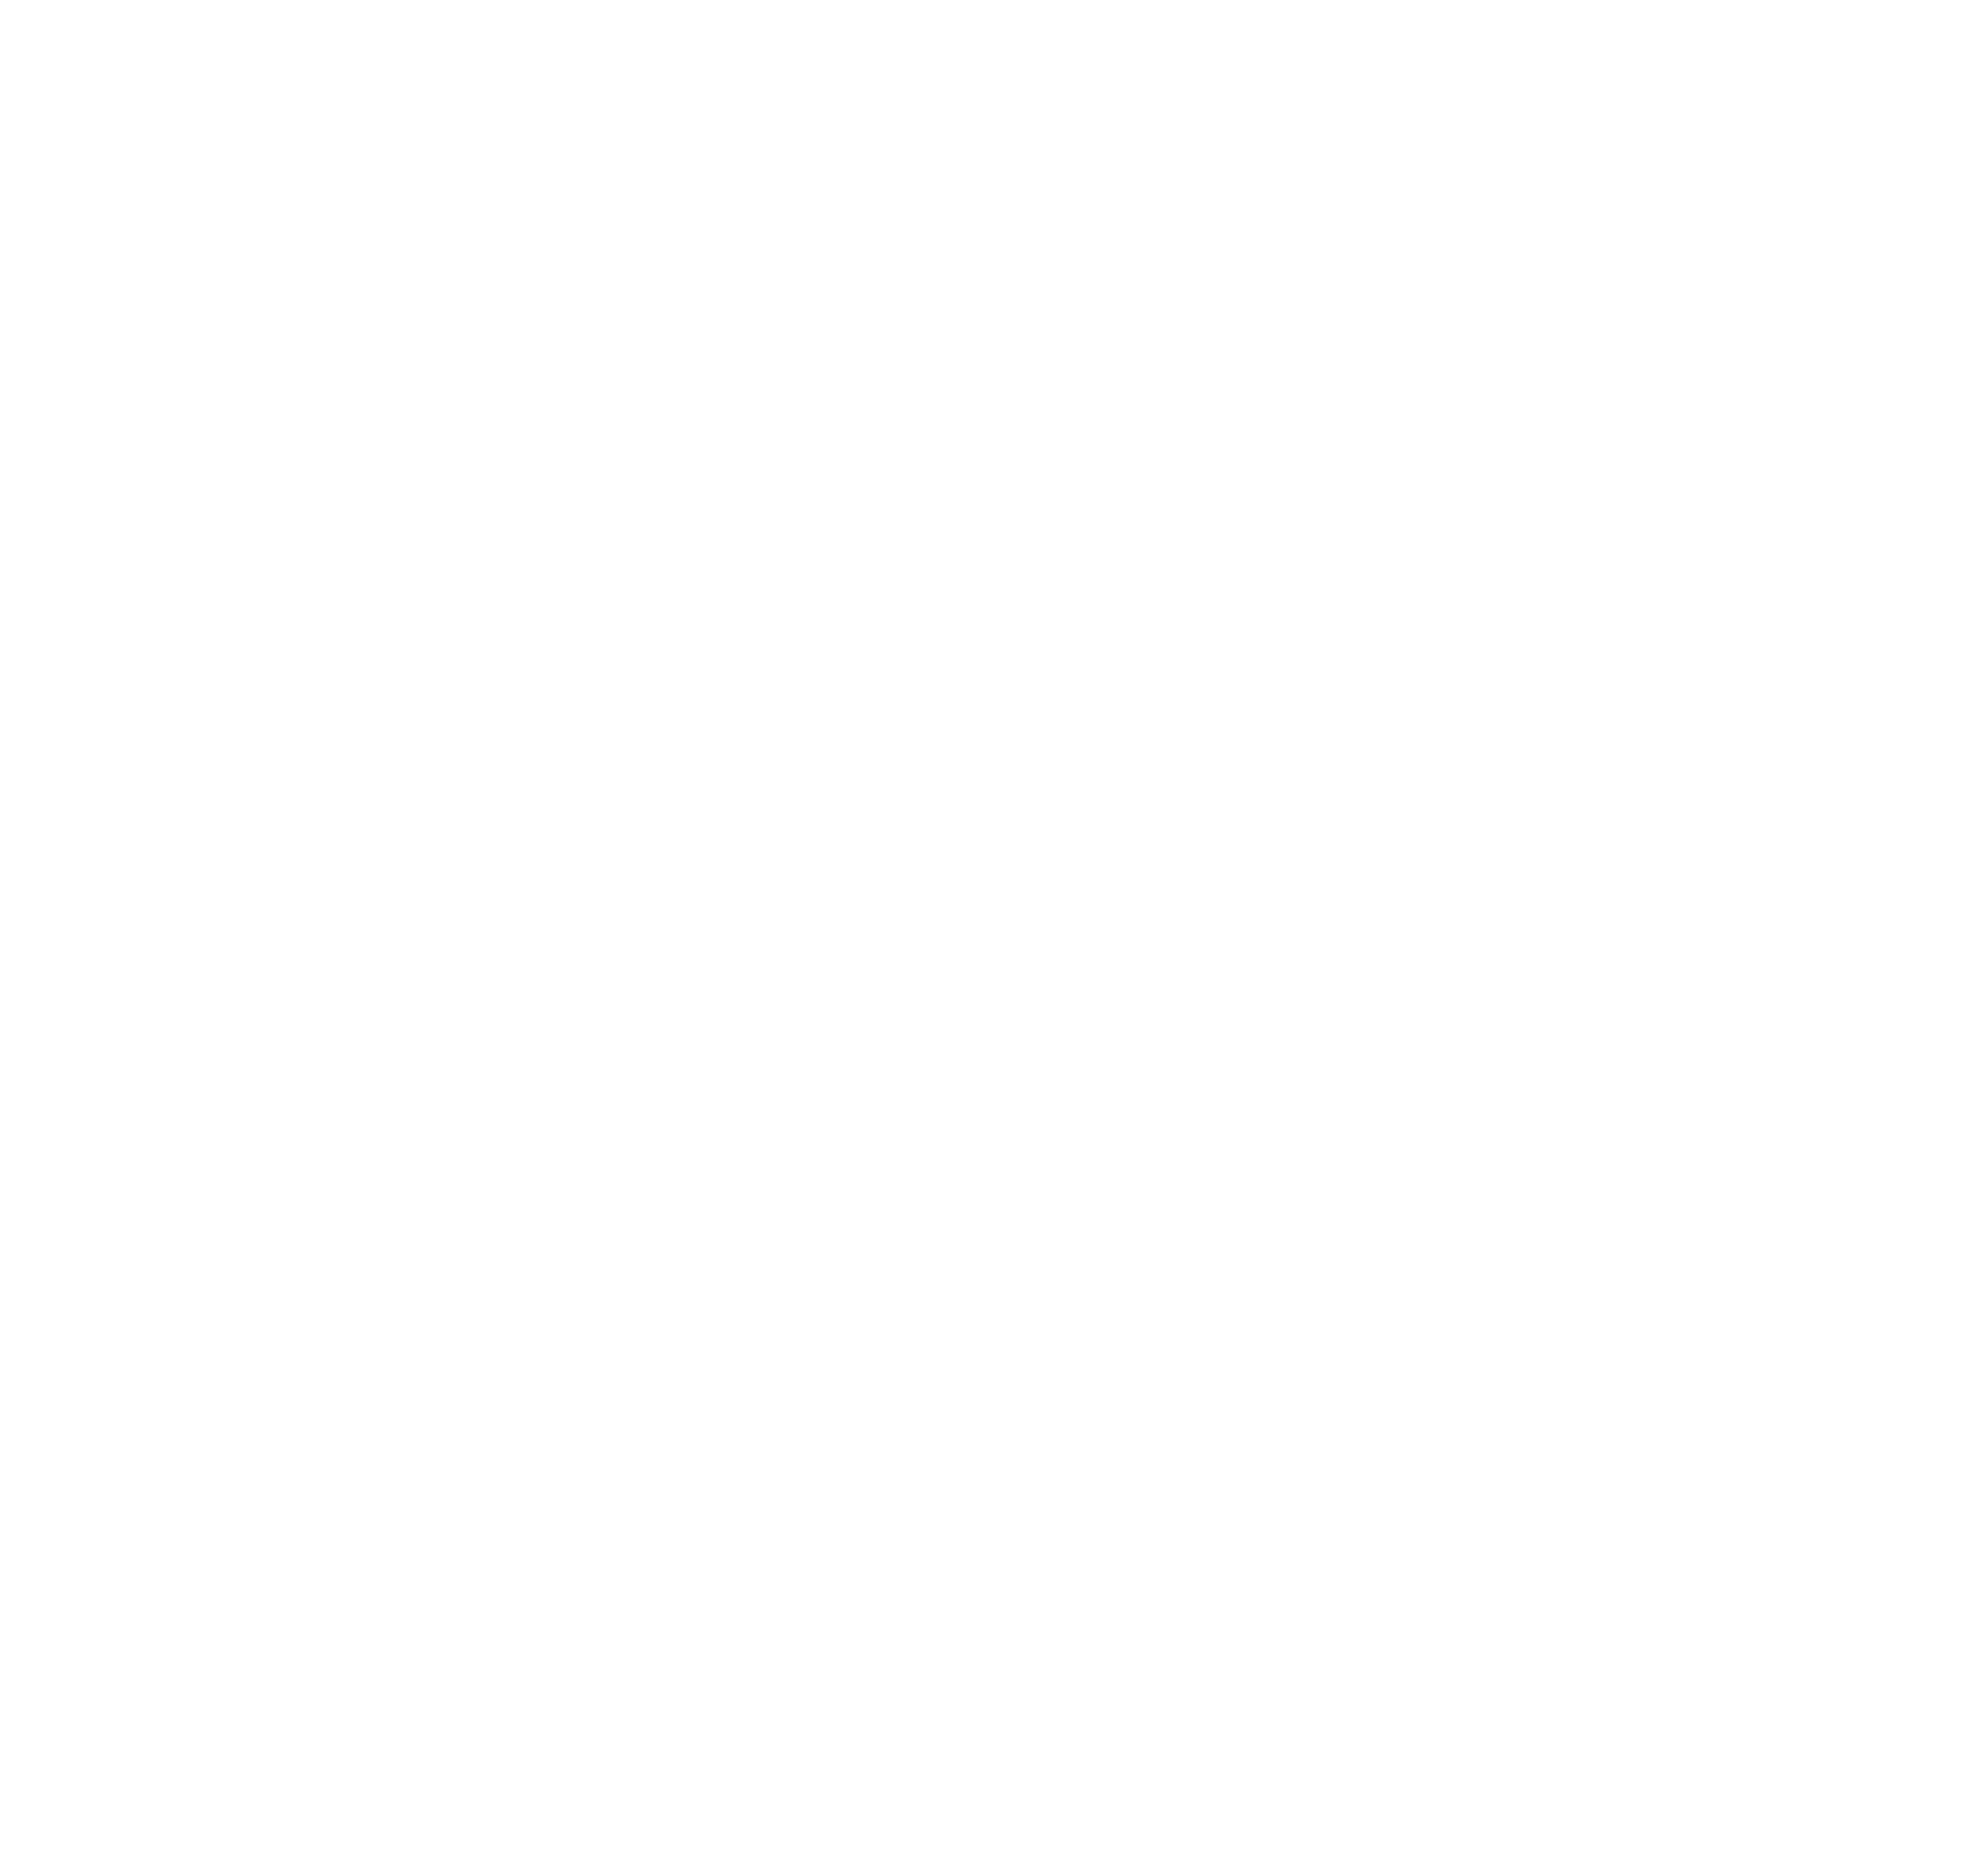 هوية اليوم الوطني السعودي 93 لعام 1445 png